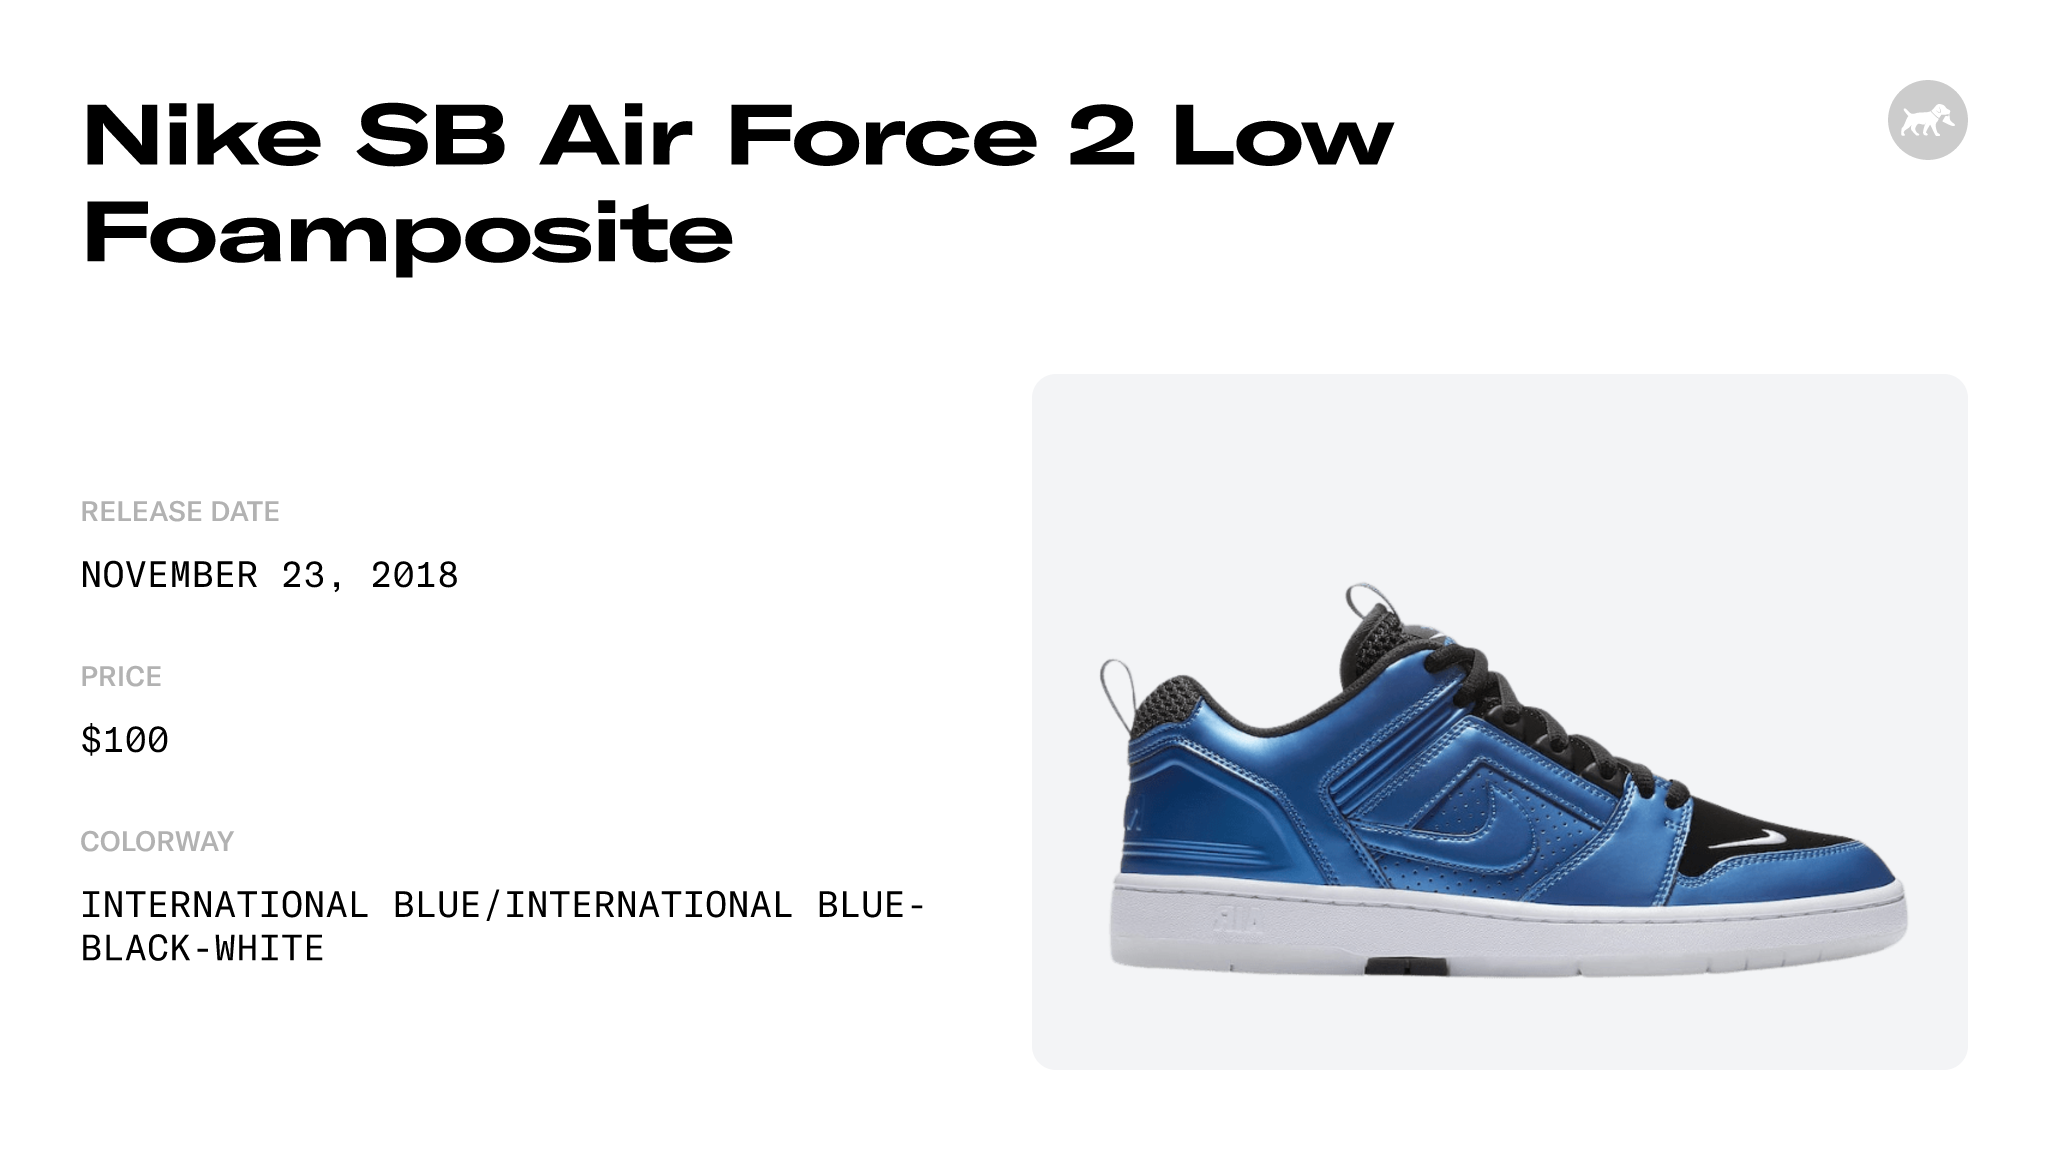 Nike SB Air Force 2 Low Foamposite Release